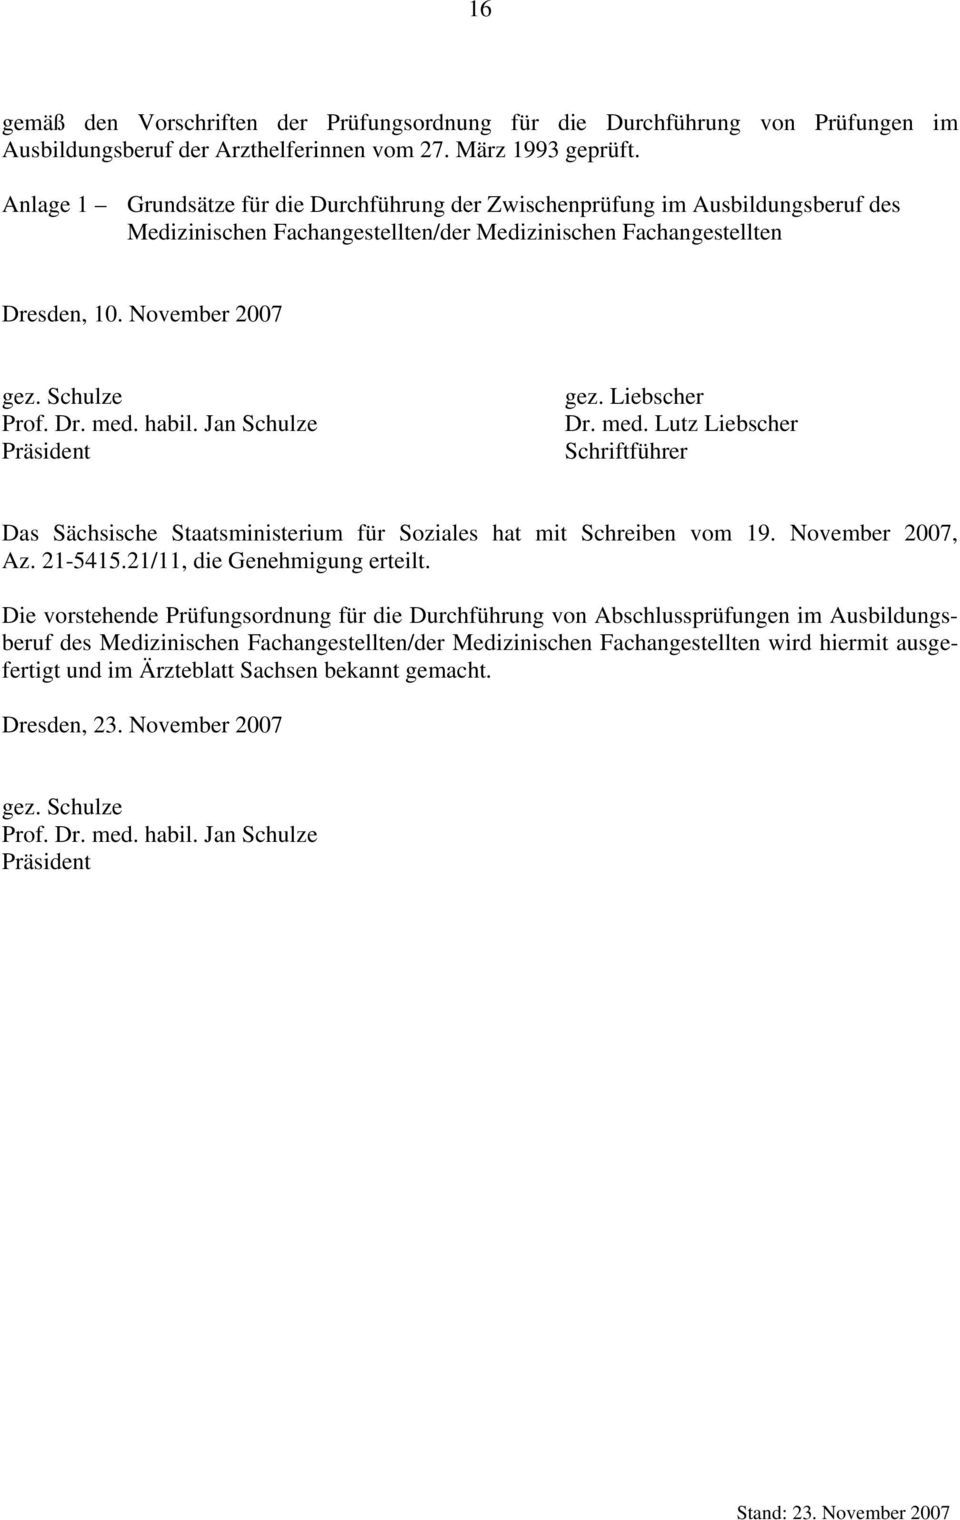 habil. Jan Schulze Präsident gez. Liebscher Dr. med. Lutz Liebscher Schriftführer Das Sächsische Staatsministerium für Soziales hat mit Schreiben vom 19. November 2007, Az. 21-5415.